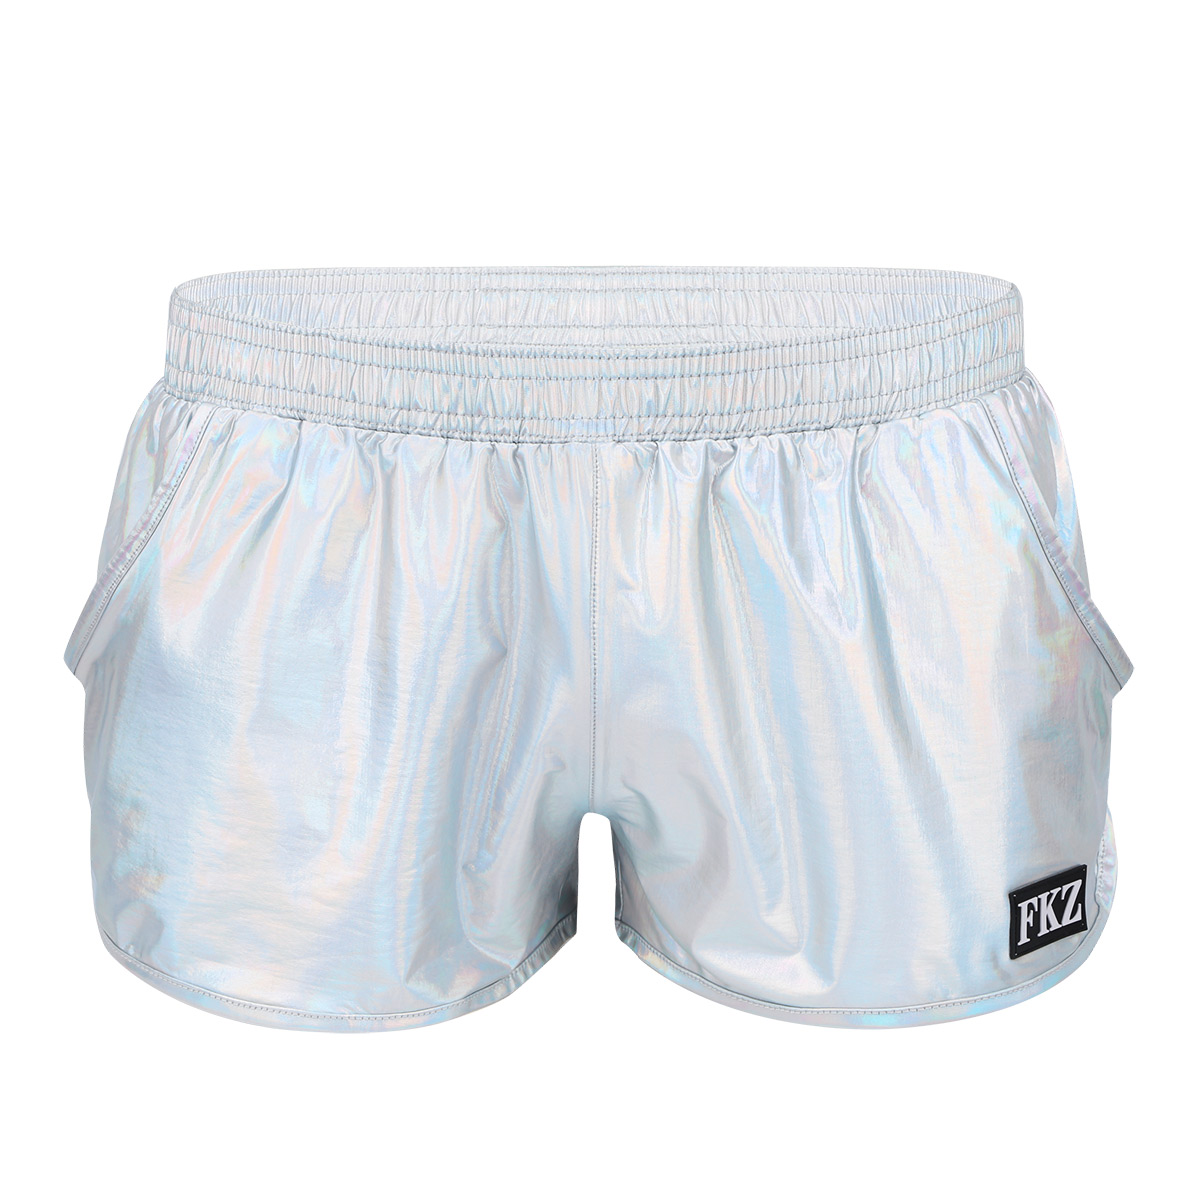 Men's Boxer Shorts Sous-vêtements Scène Performance Clubwear Costume Natation Trunks 